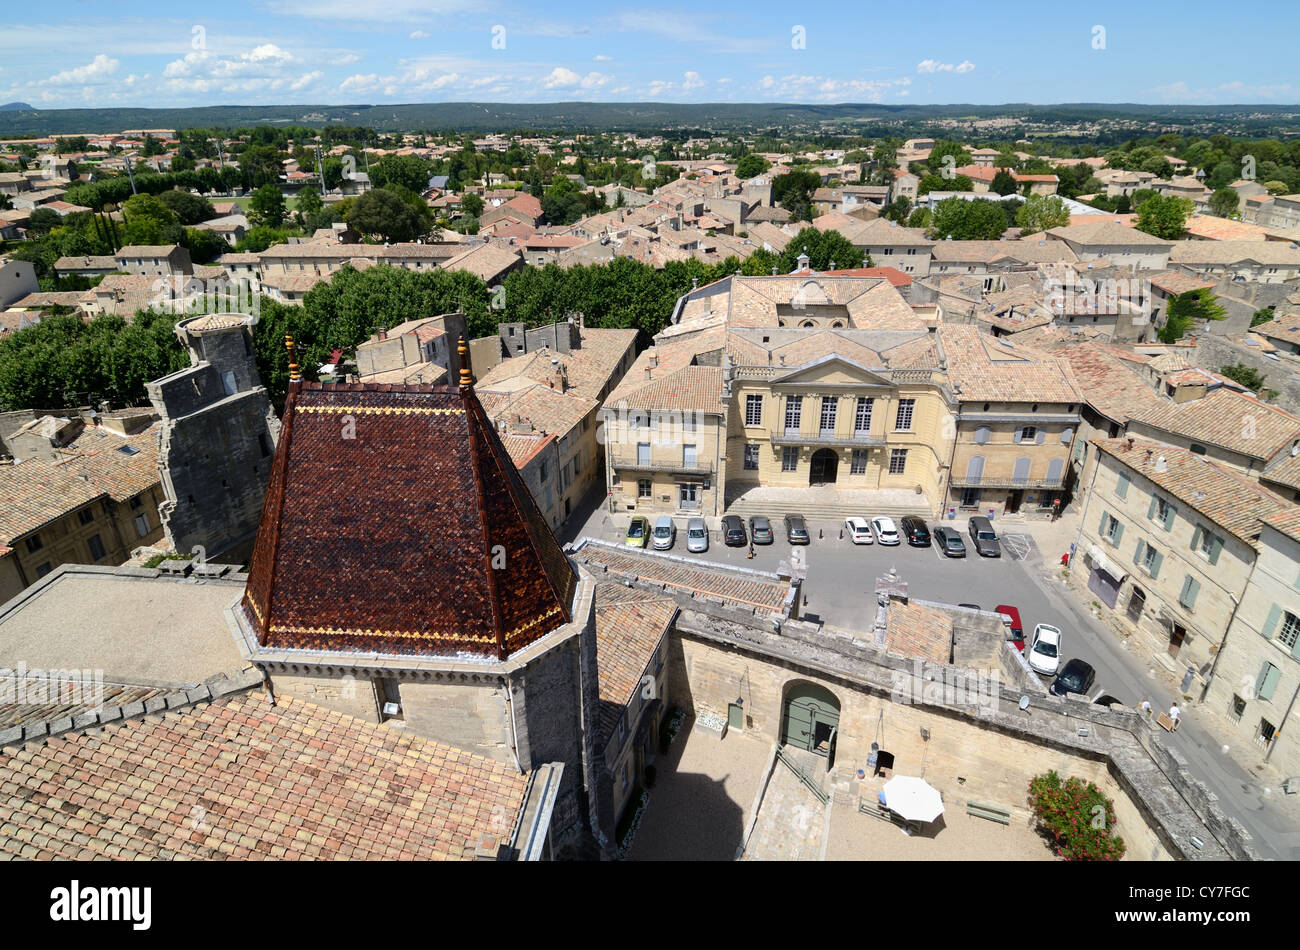 Luftaufnahme, Panorama oder Panoramablick über die Altstadt oder den historischen Bezirk von Uzès vom Herzogspalast oder Château Uzès Gard France Stockfoto